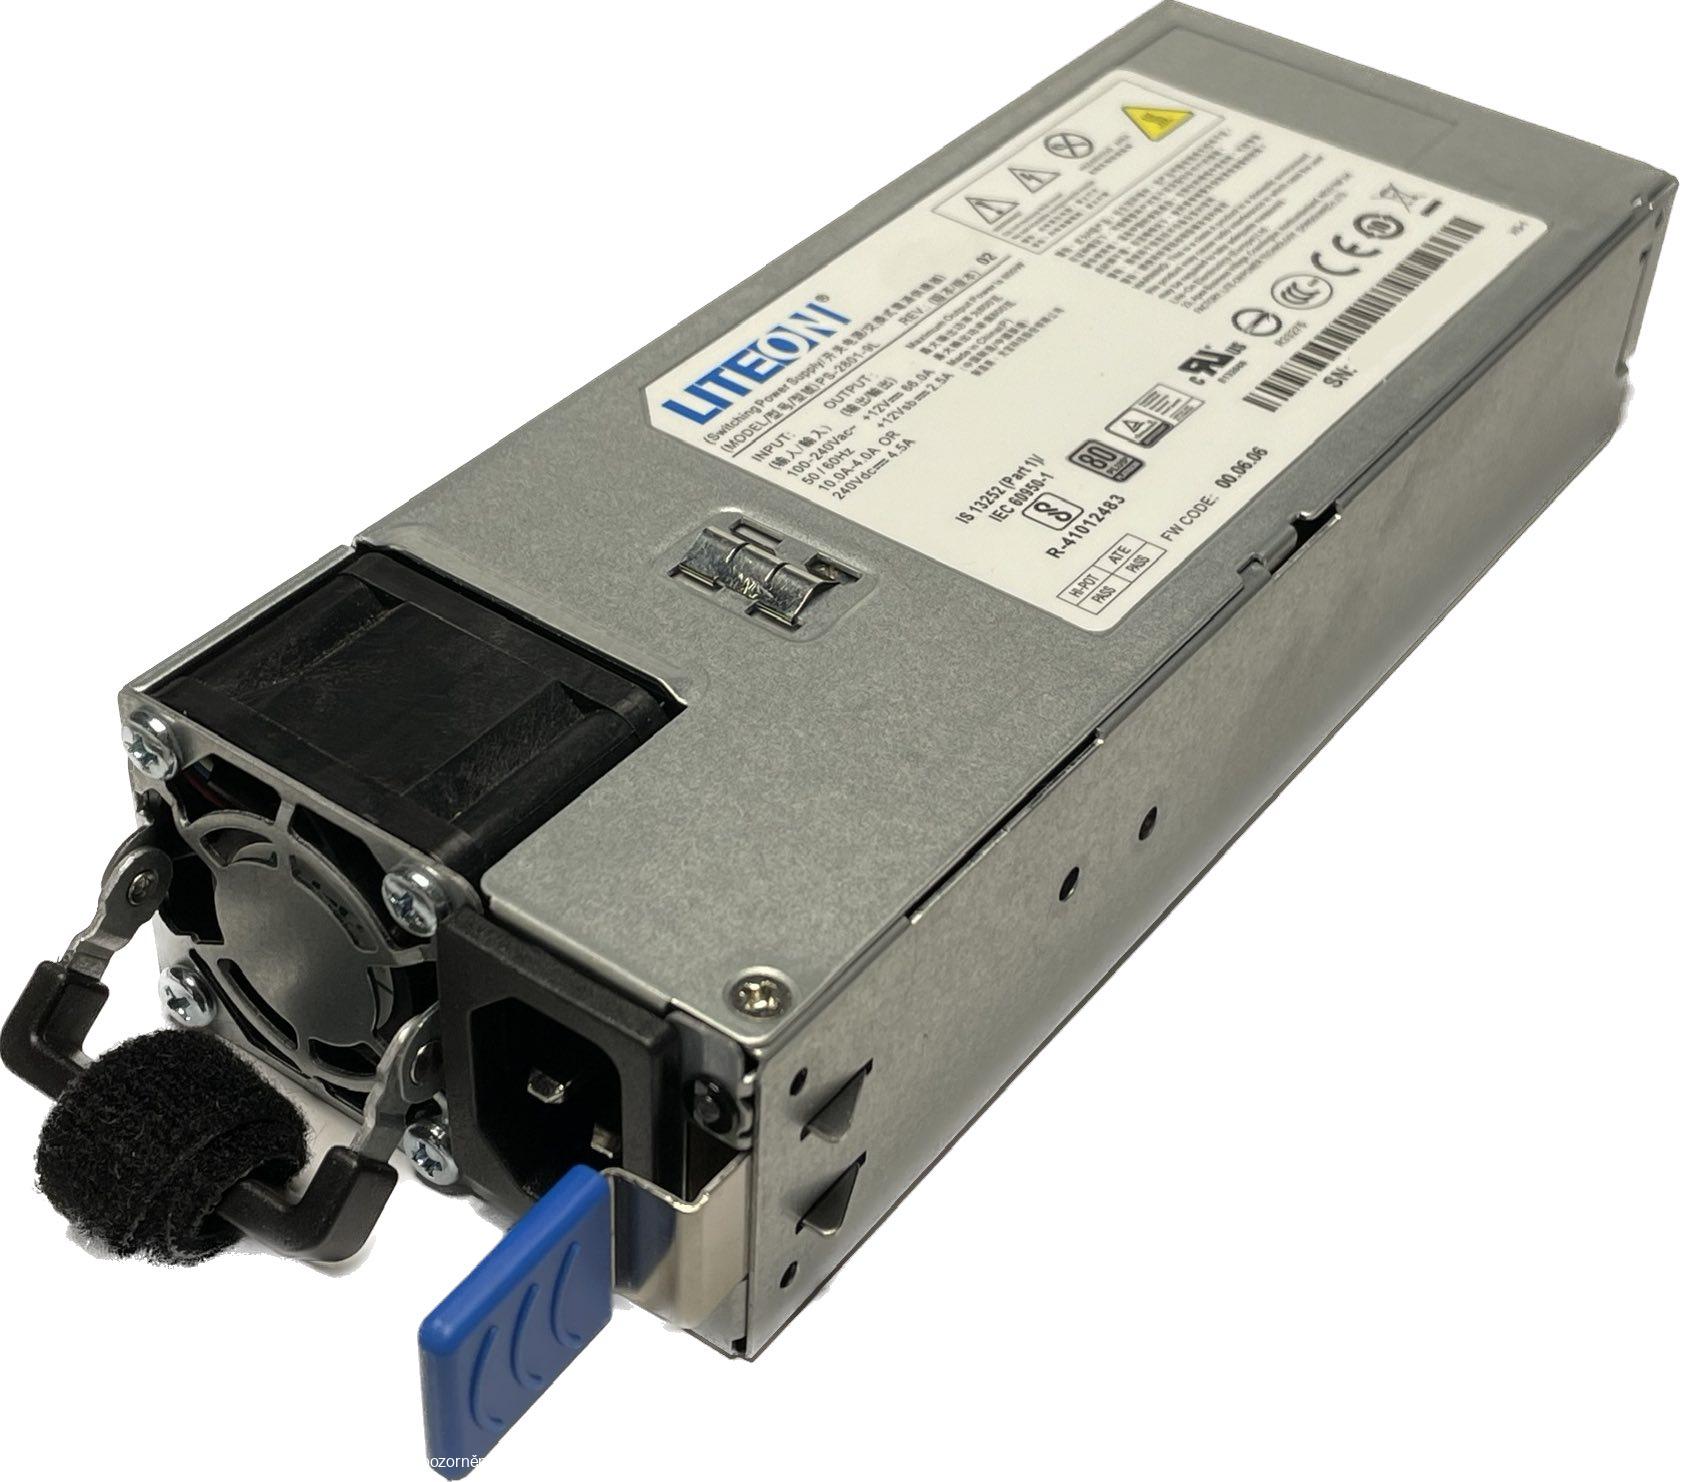  Modul napájecího zdroje Lite-on PS-2801-9L 800W CRPS 